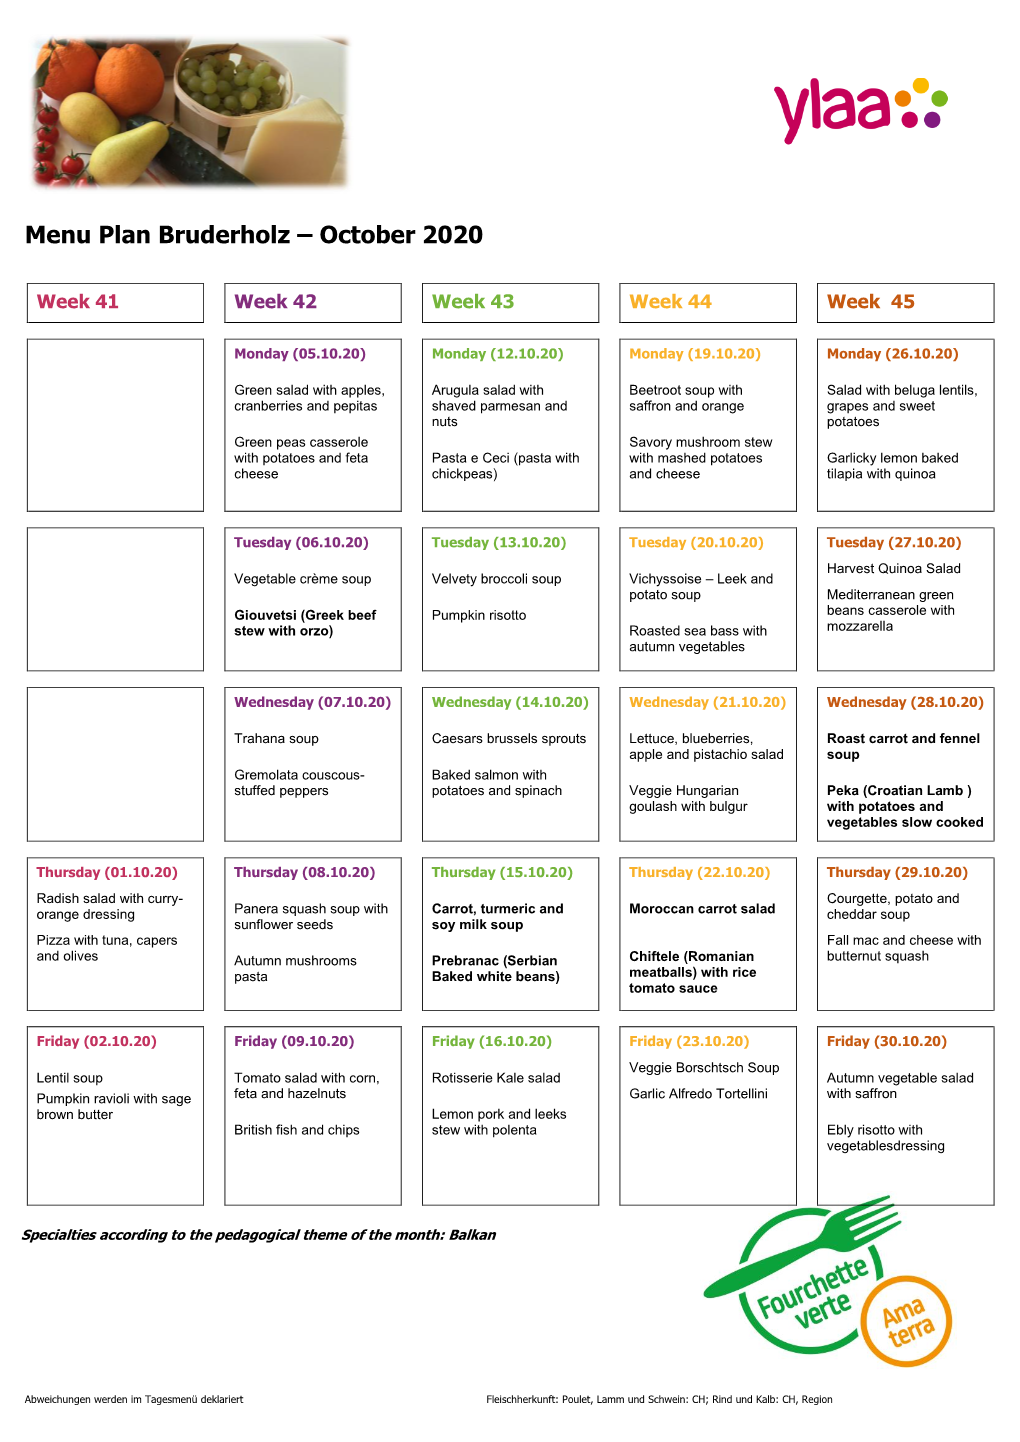 Menu Plan Bruderholz – October 2020